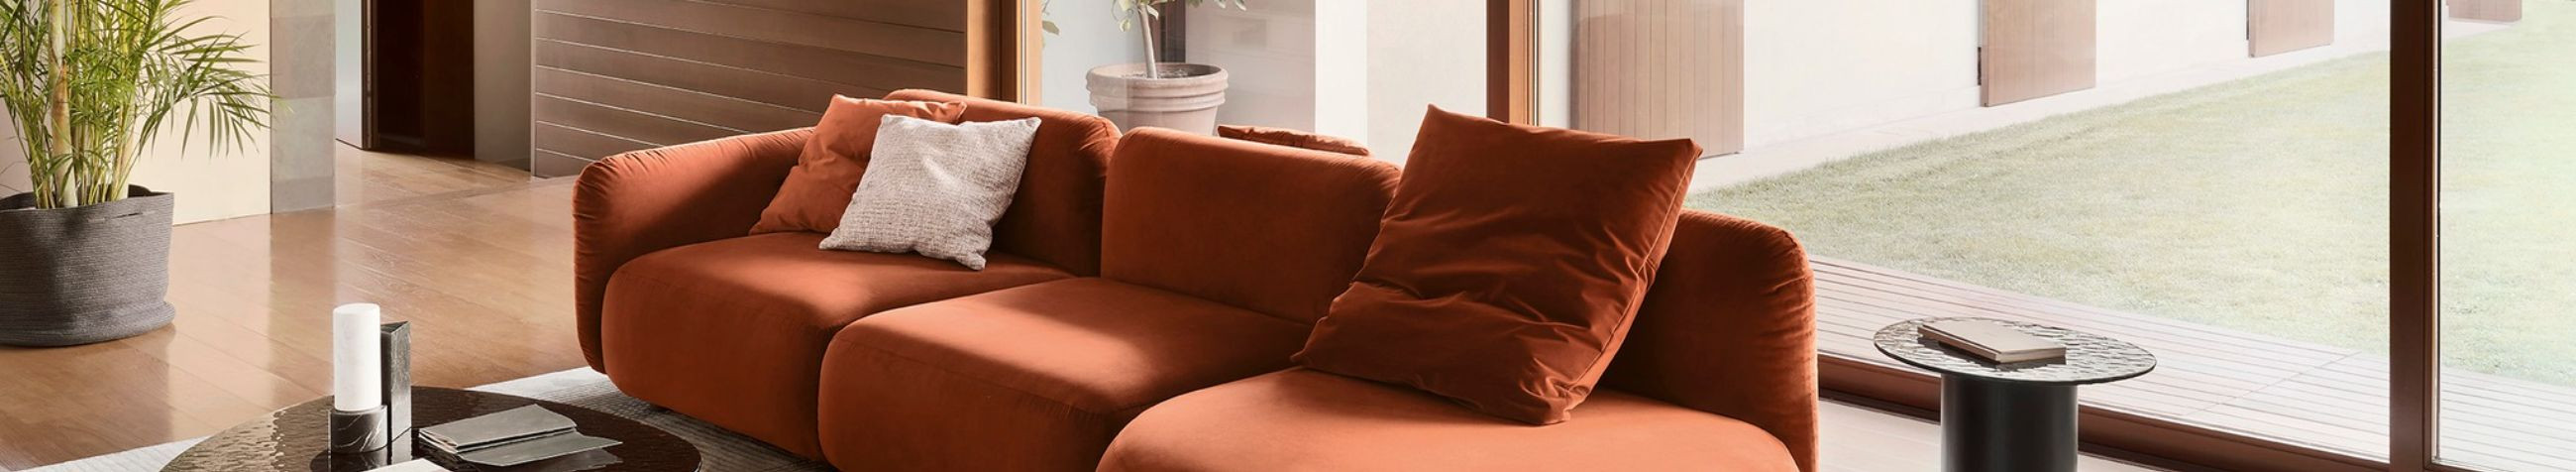 Tegeleme kvaliteetse mööbli müügi, sisedisaini ning mööbli paigaldusega, pakkudes täislahendusi luksuslikumatele interjööridele.